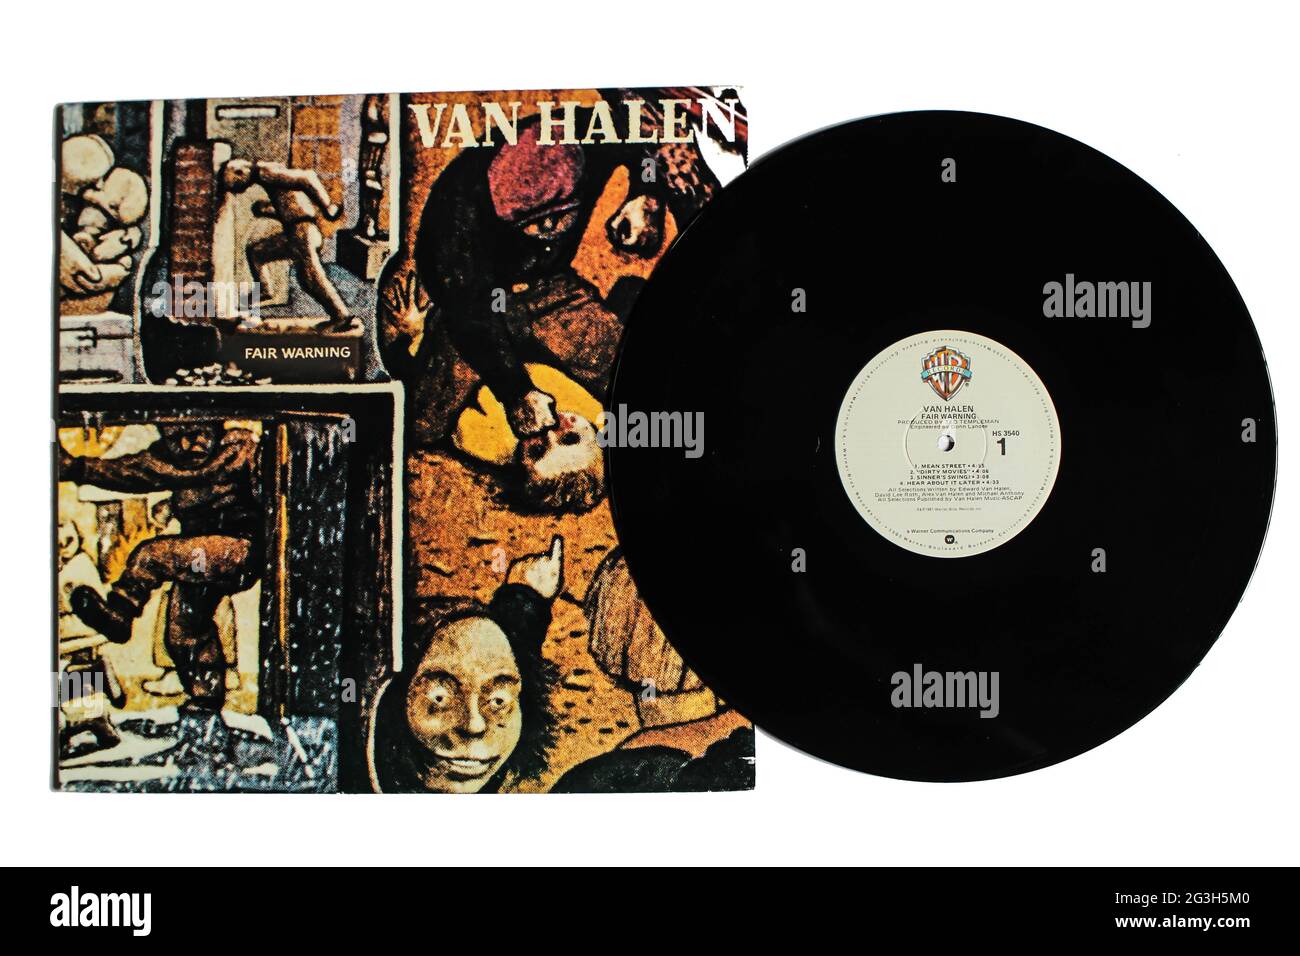 Hard Rock, Heavy Metal und Glam Metal Band, Van Halen Musikalbum auf Vinyl LP Disc. Titel: Fair Warning Album Cover Stockfoto